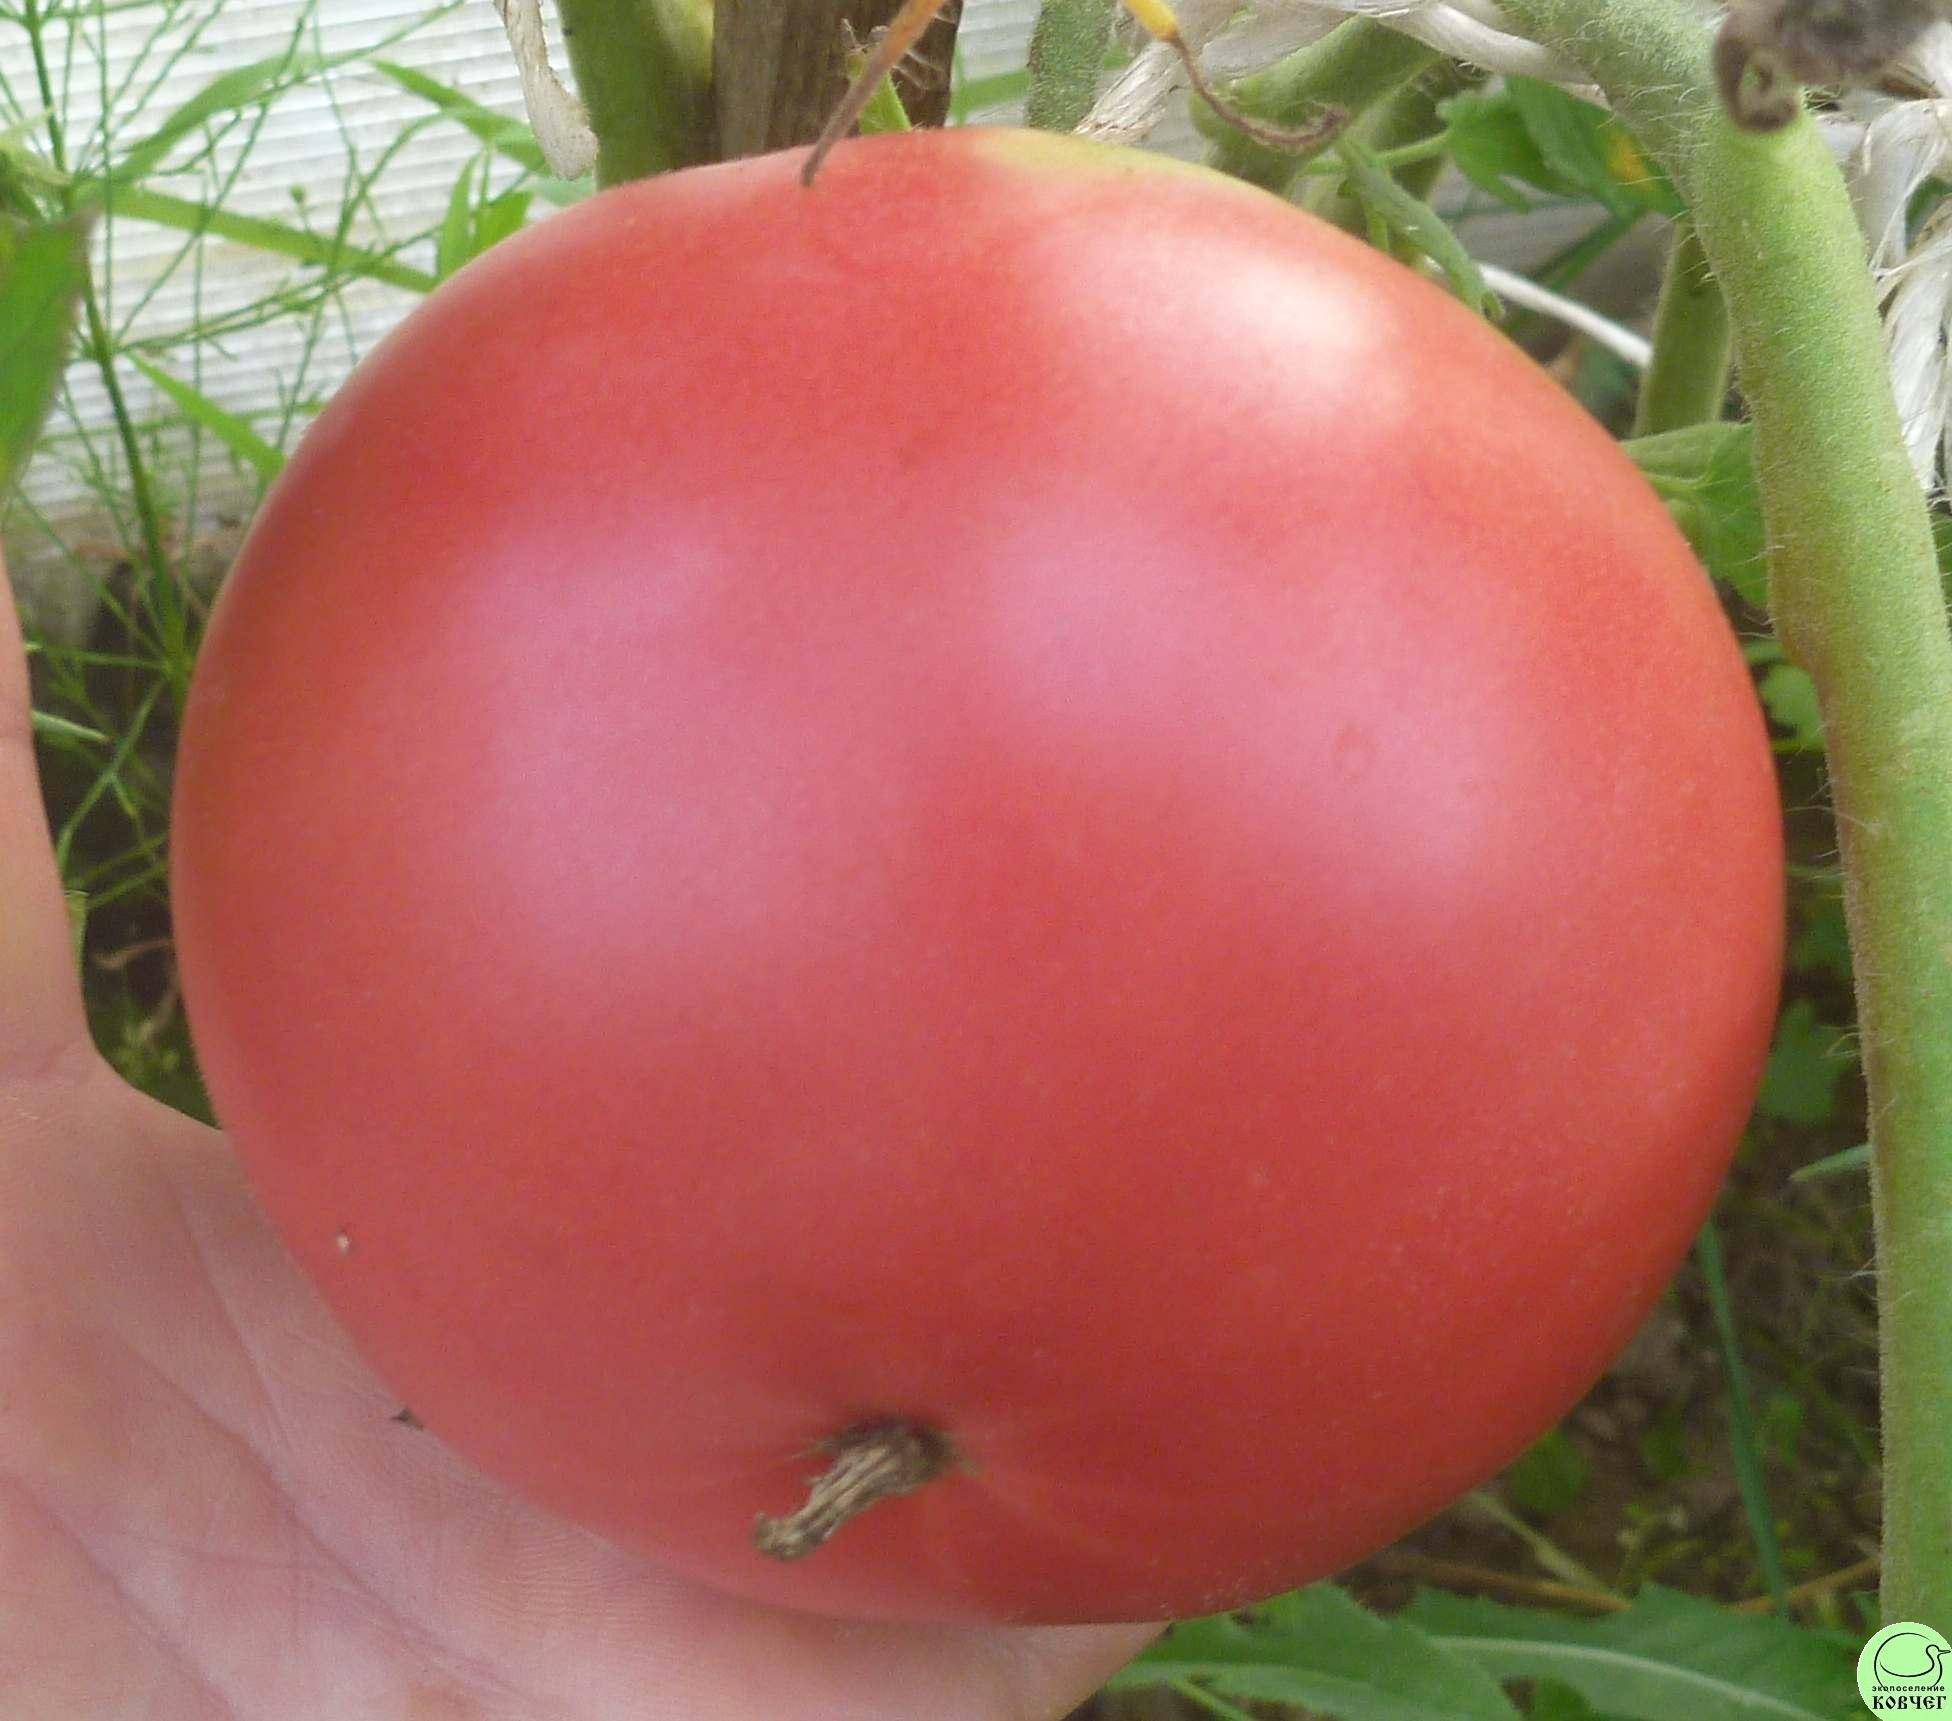 Описание сорта томата ваше благородие, особенности выращивания и ухода – дачные дела